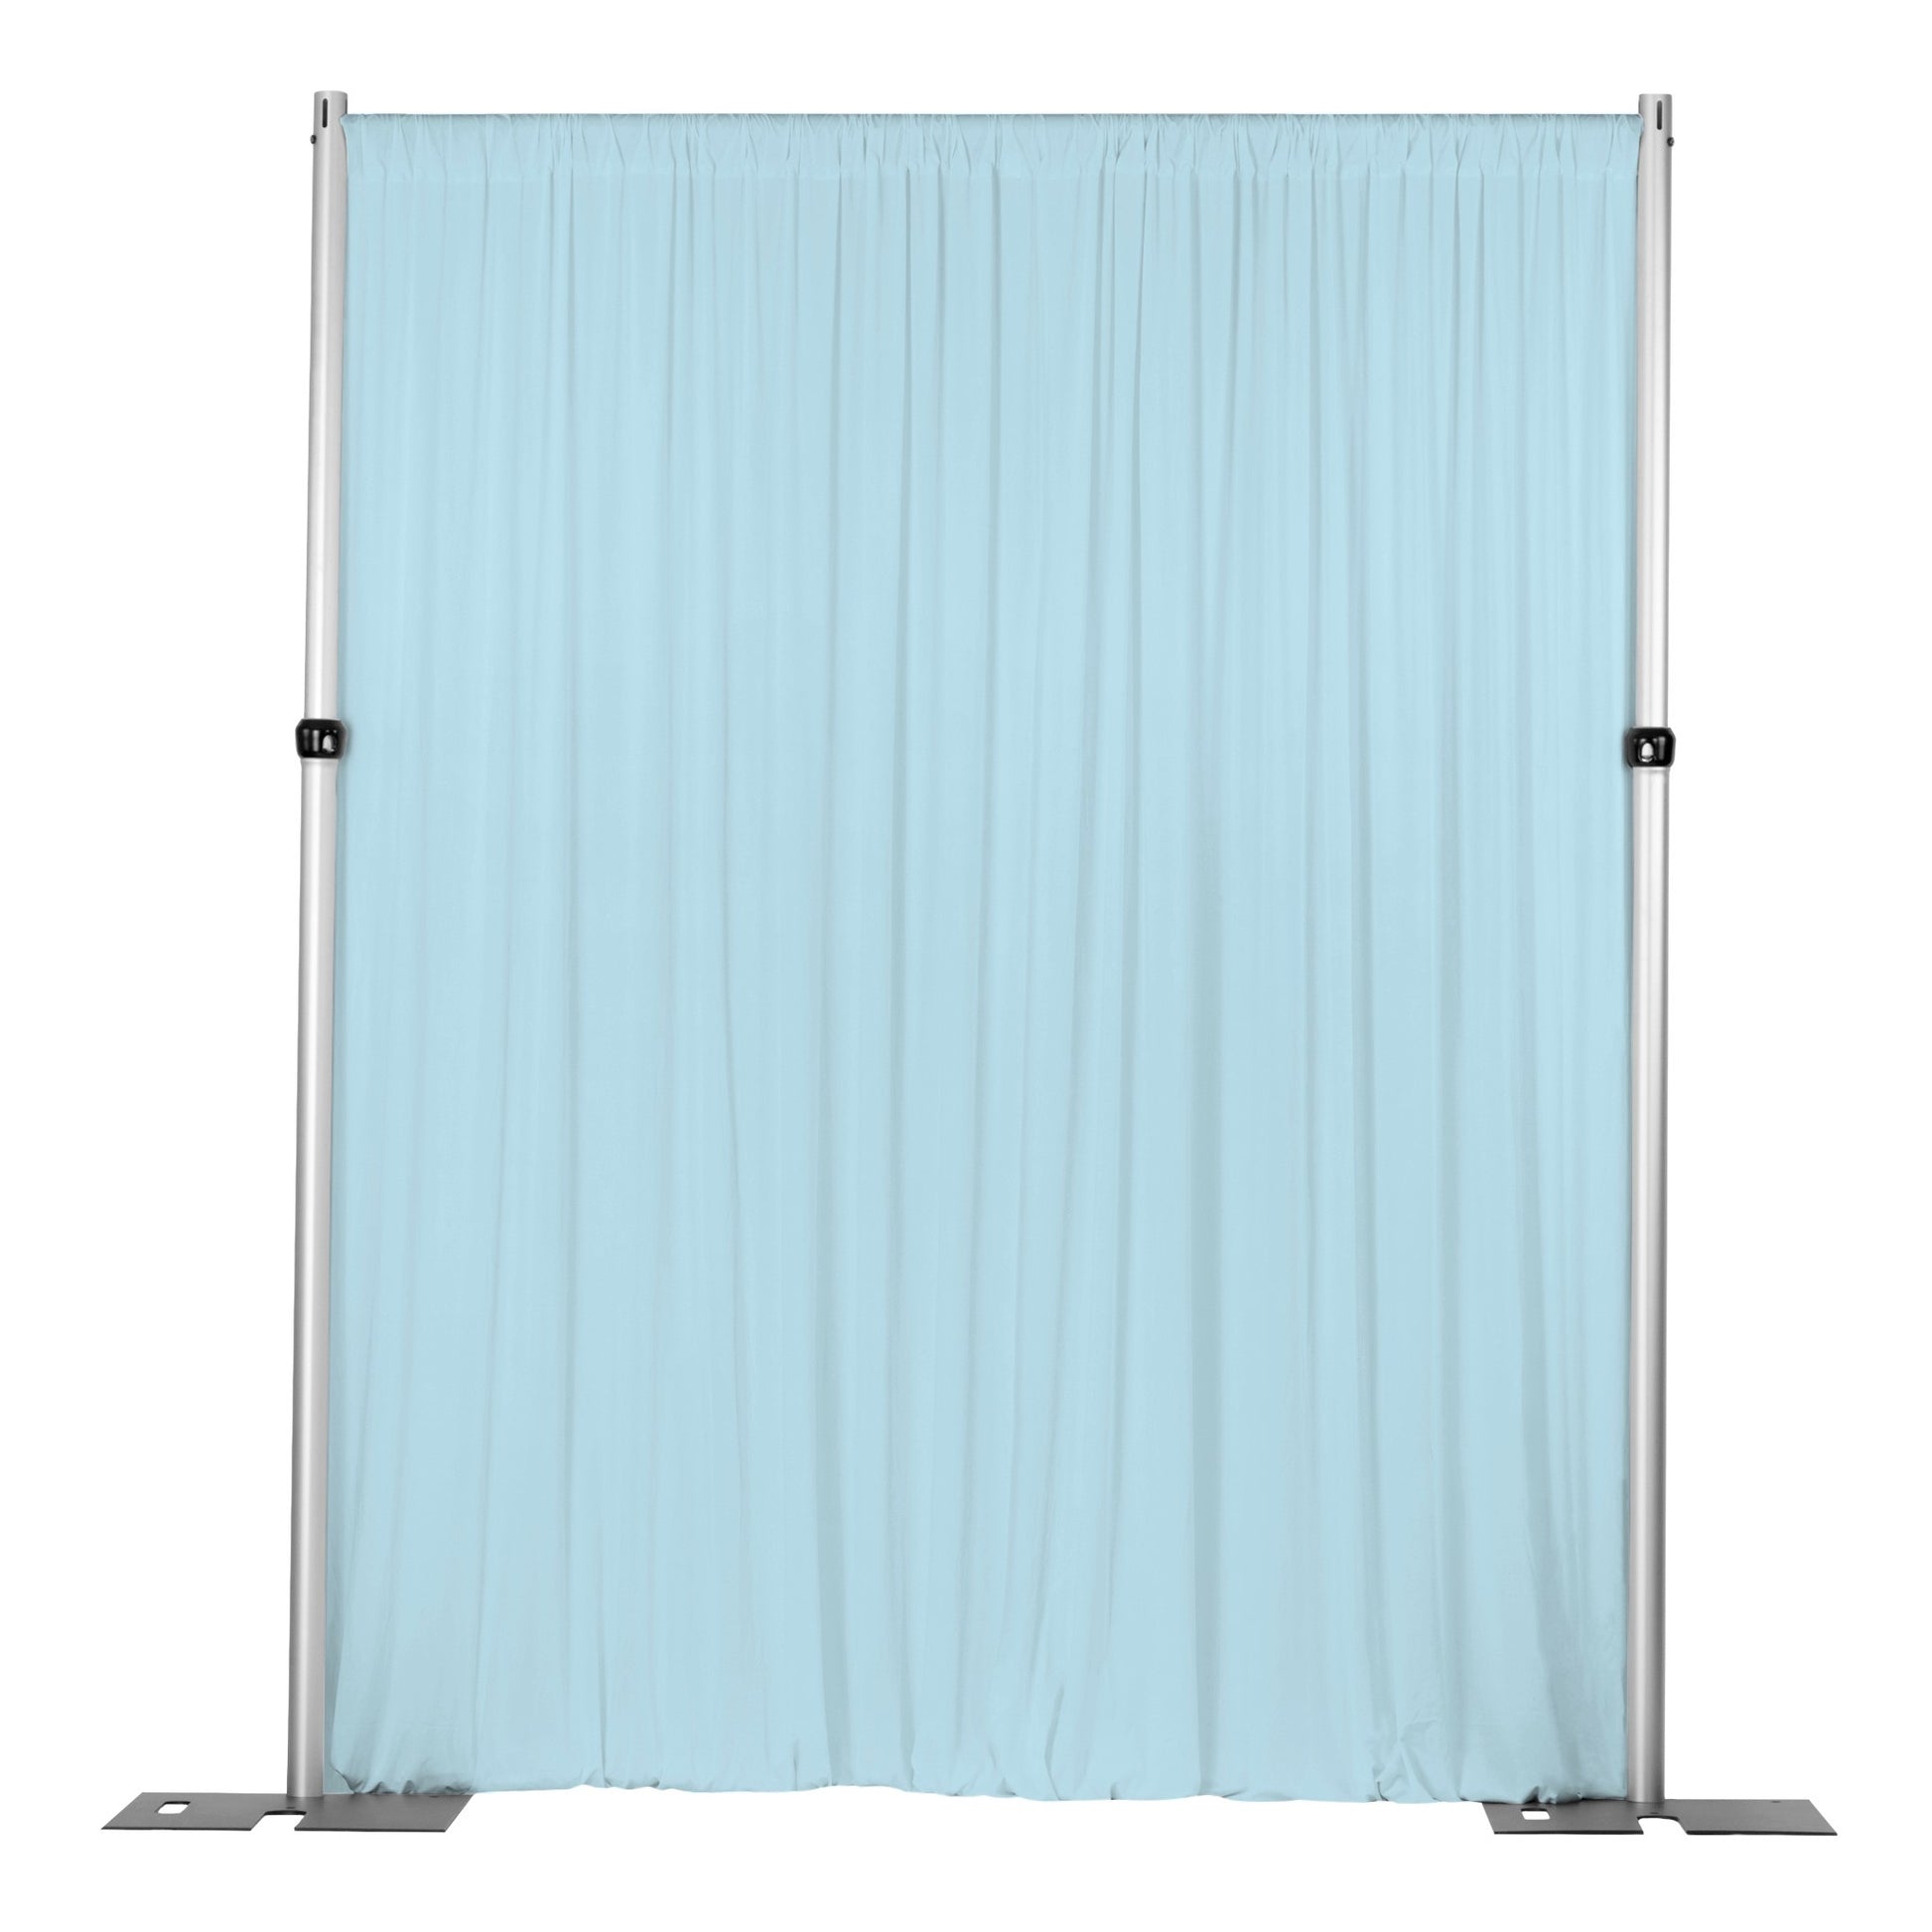 Spandex 4-way Stretch Drape Curtain 14ft H x 60" W - Baby Blue